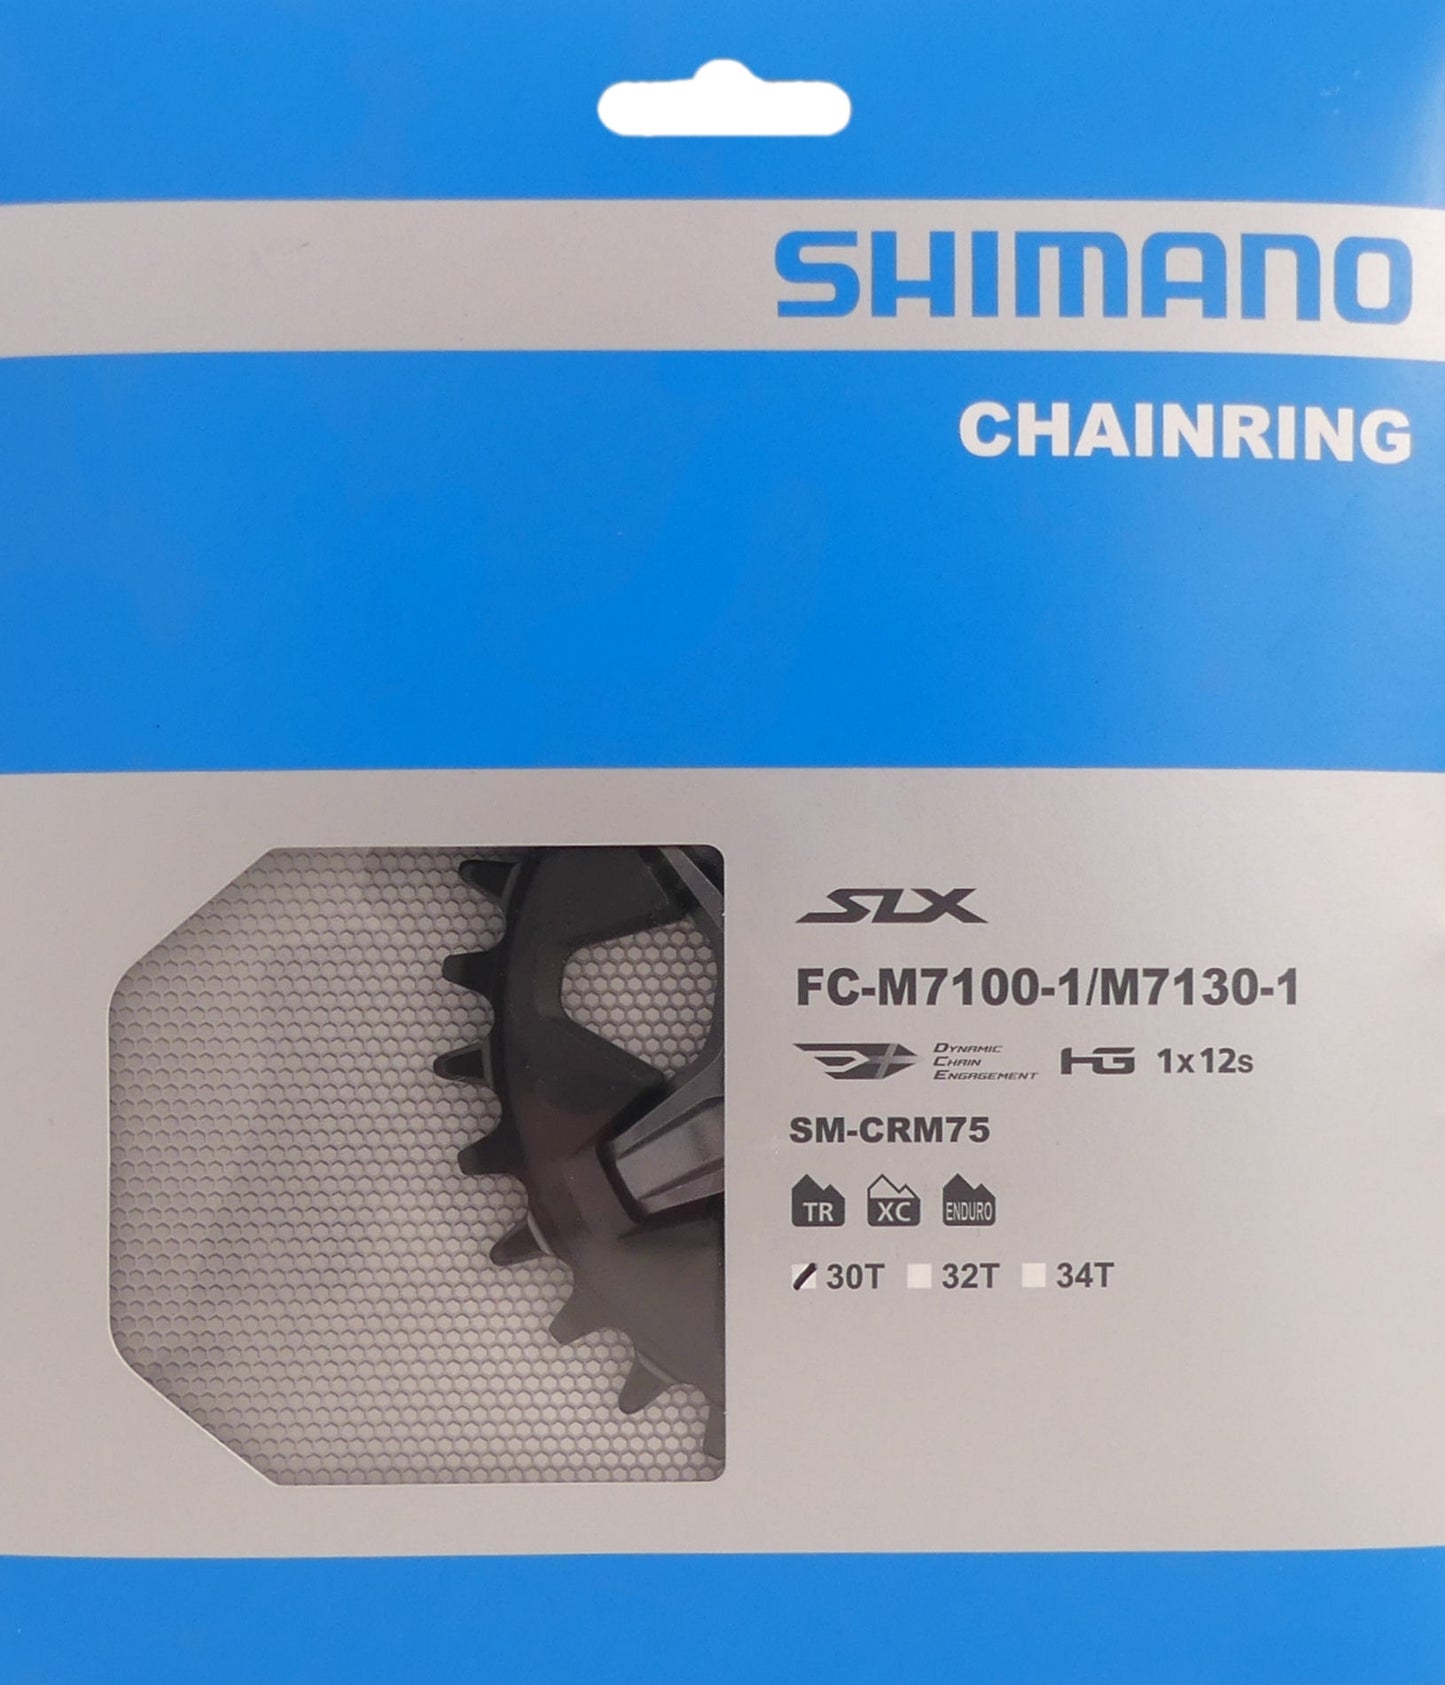 Shimano Chain Top SLX 34T Foglio singolo FC-M7100-1